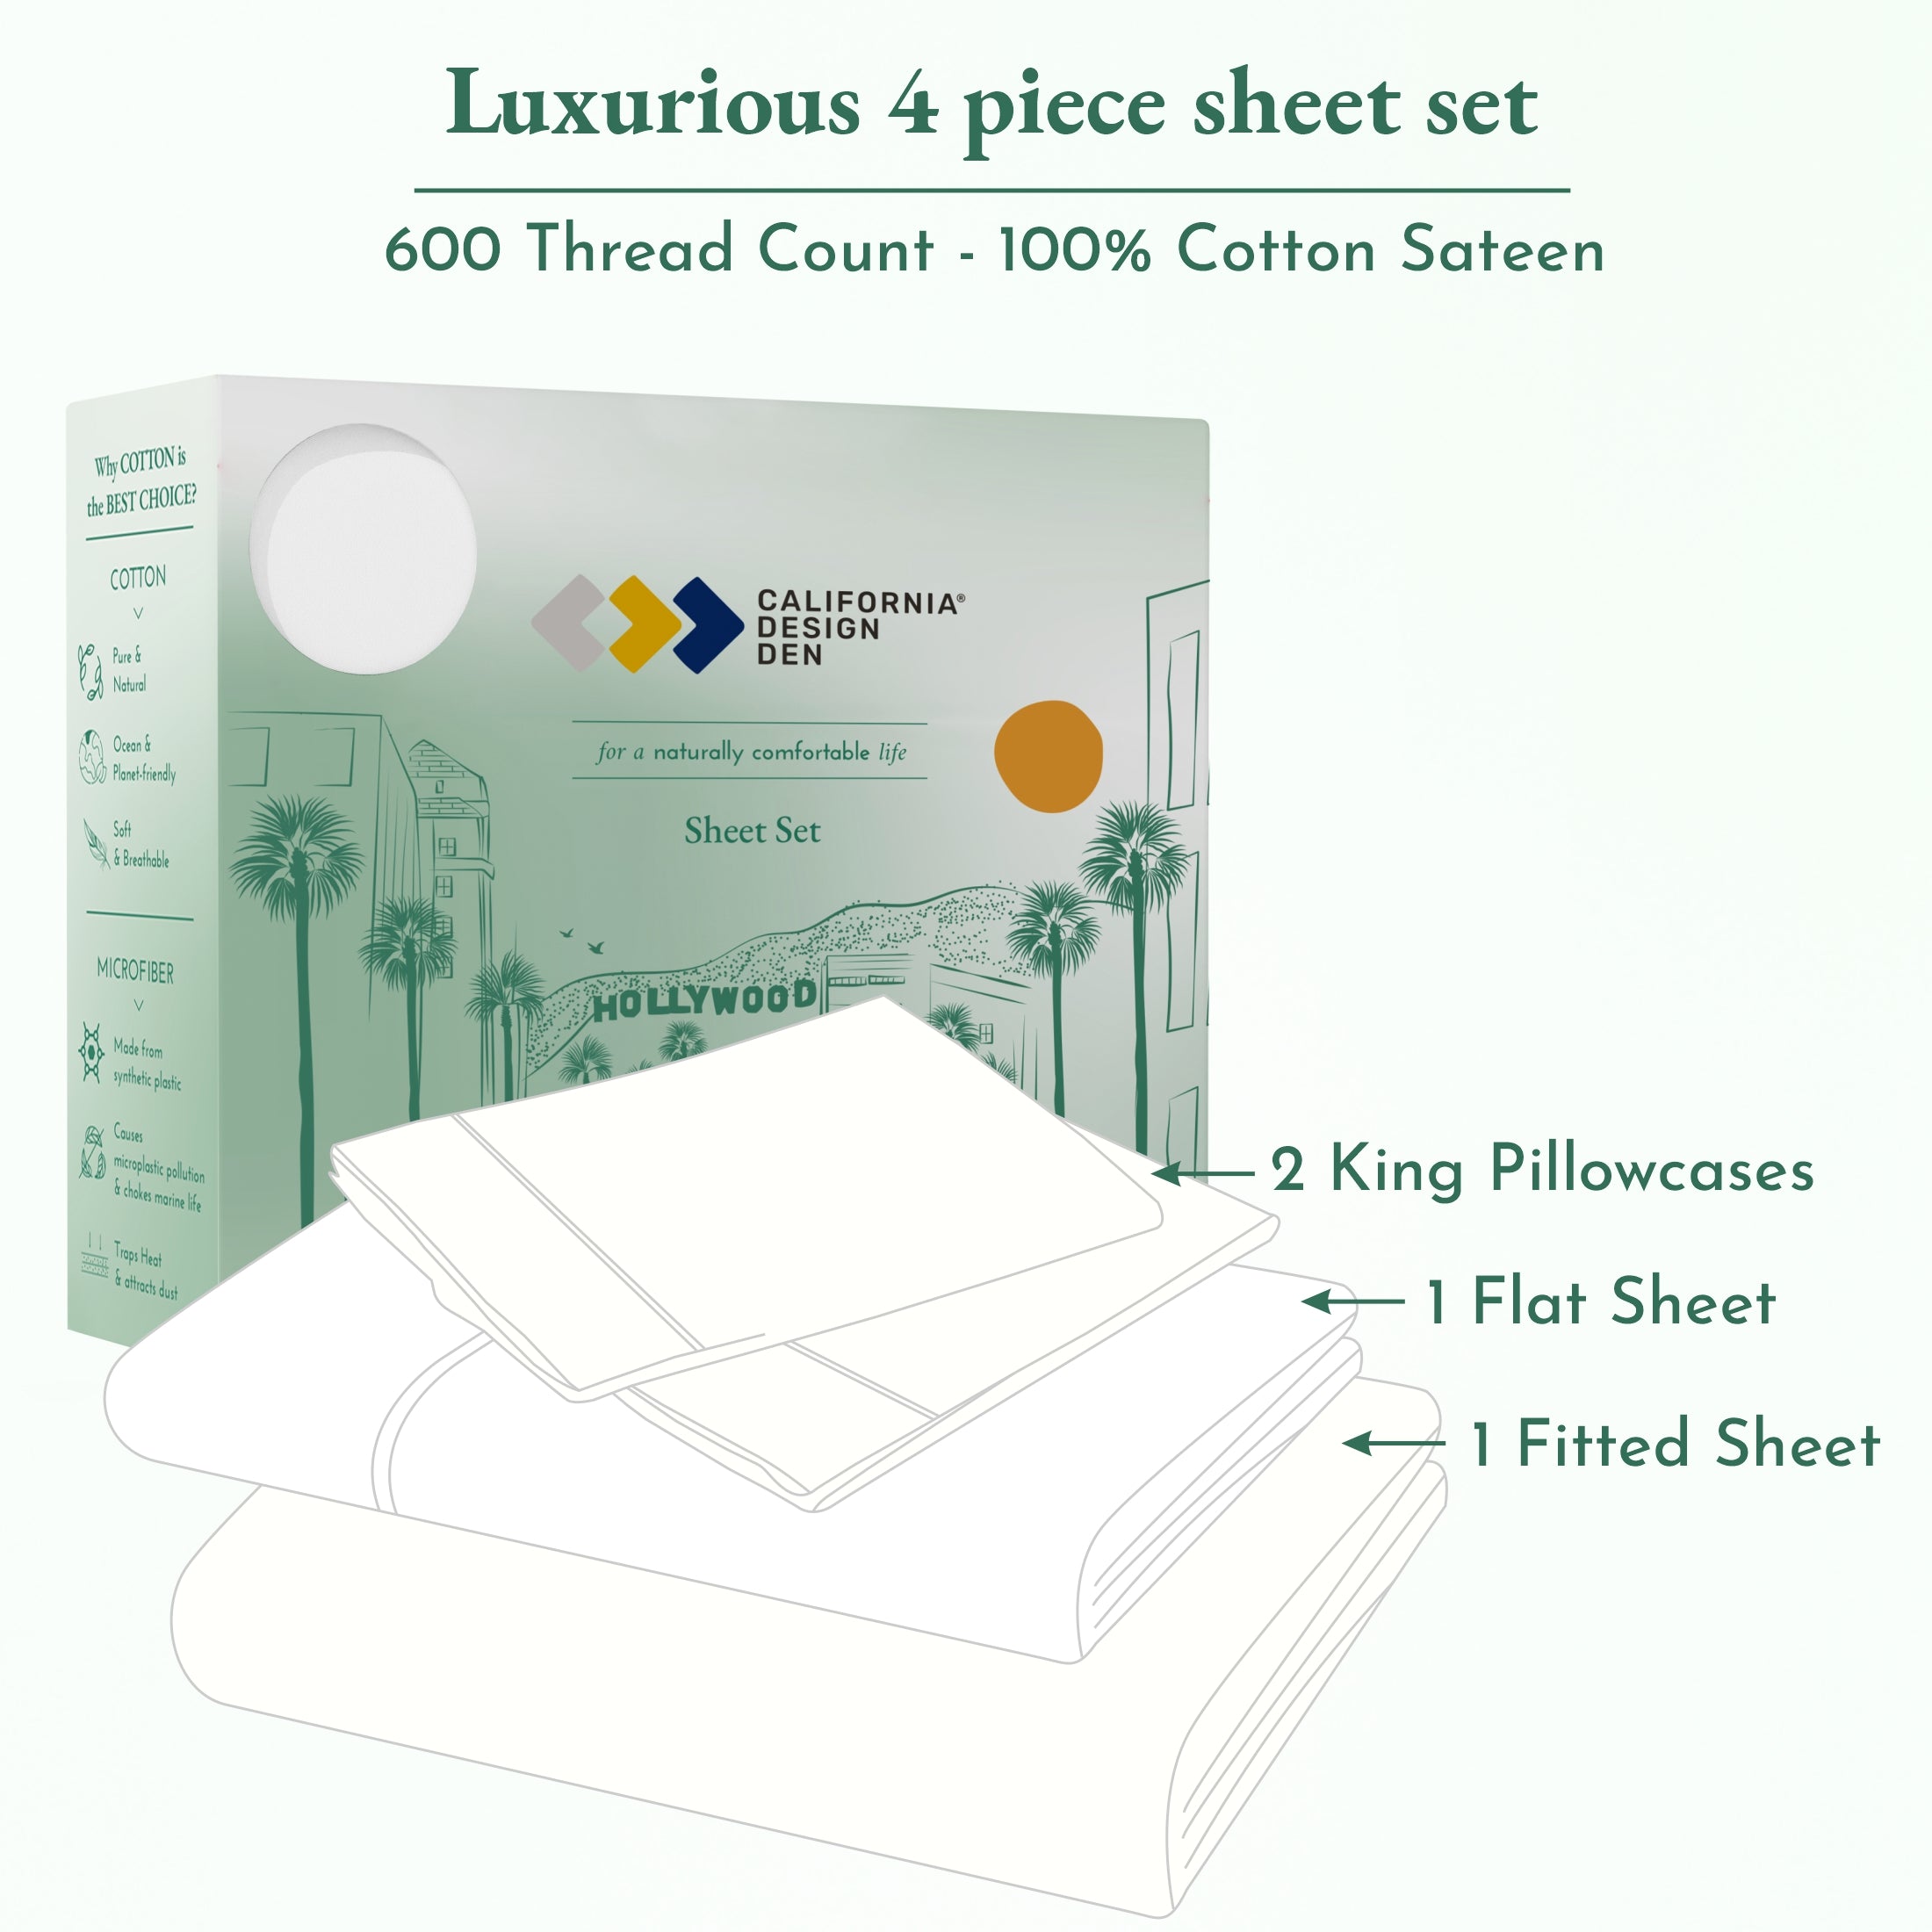 Luxe Smooth Sateen Solid Sheet Set - California Design Den